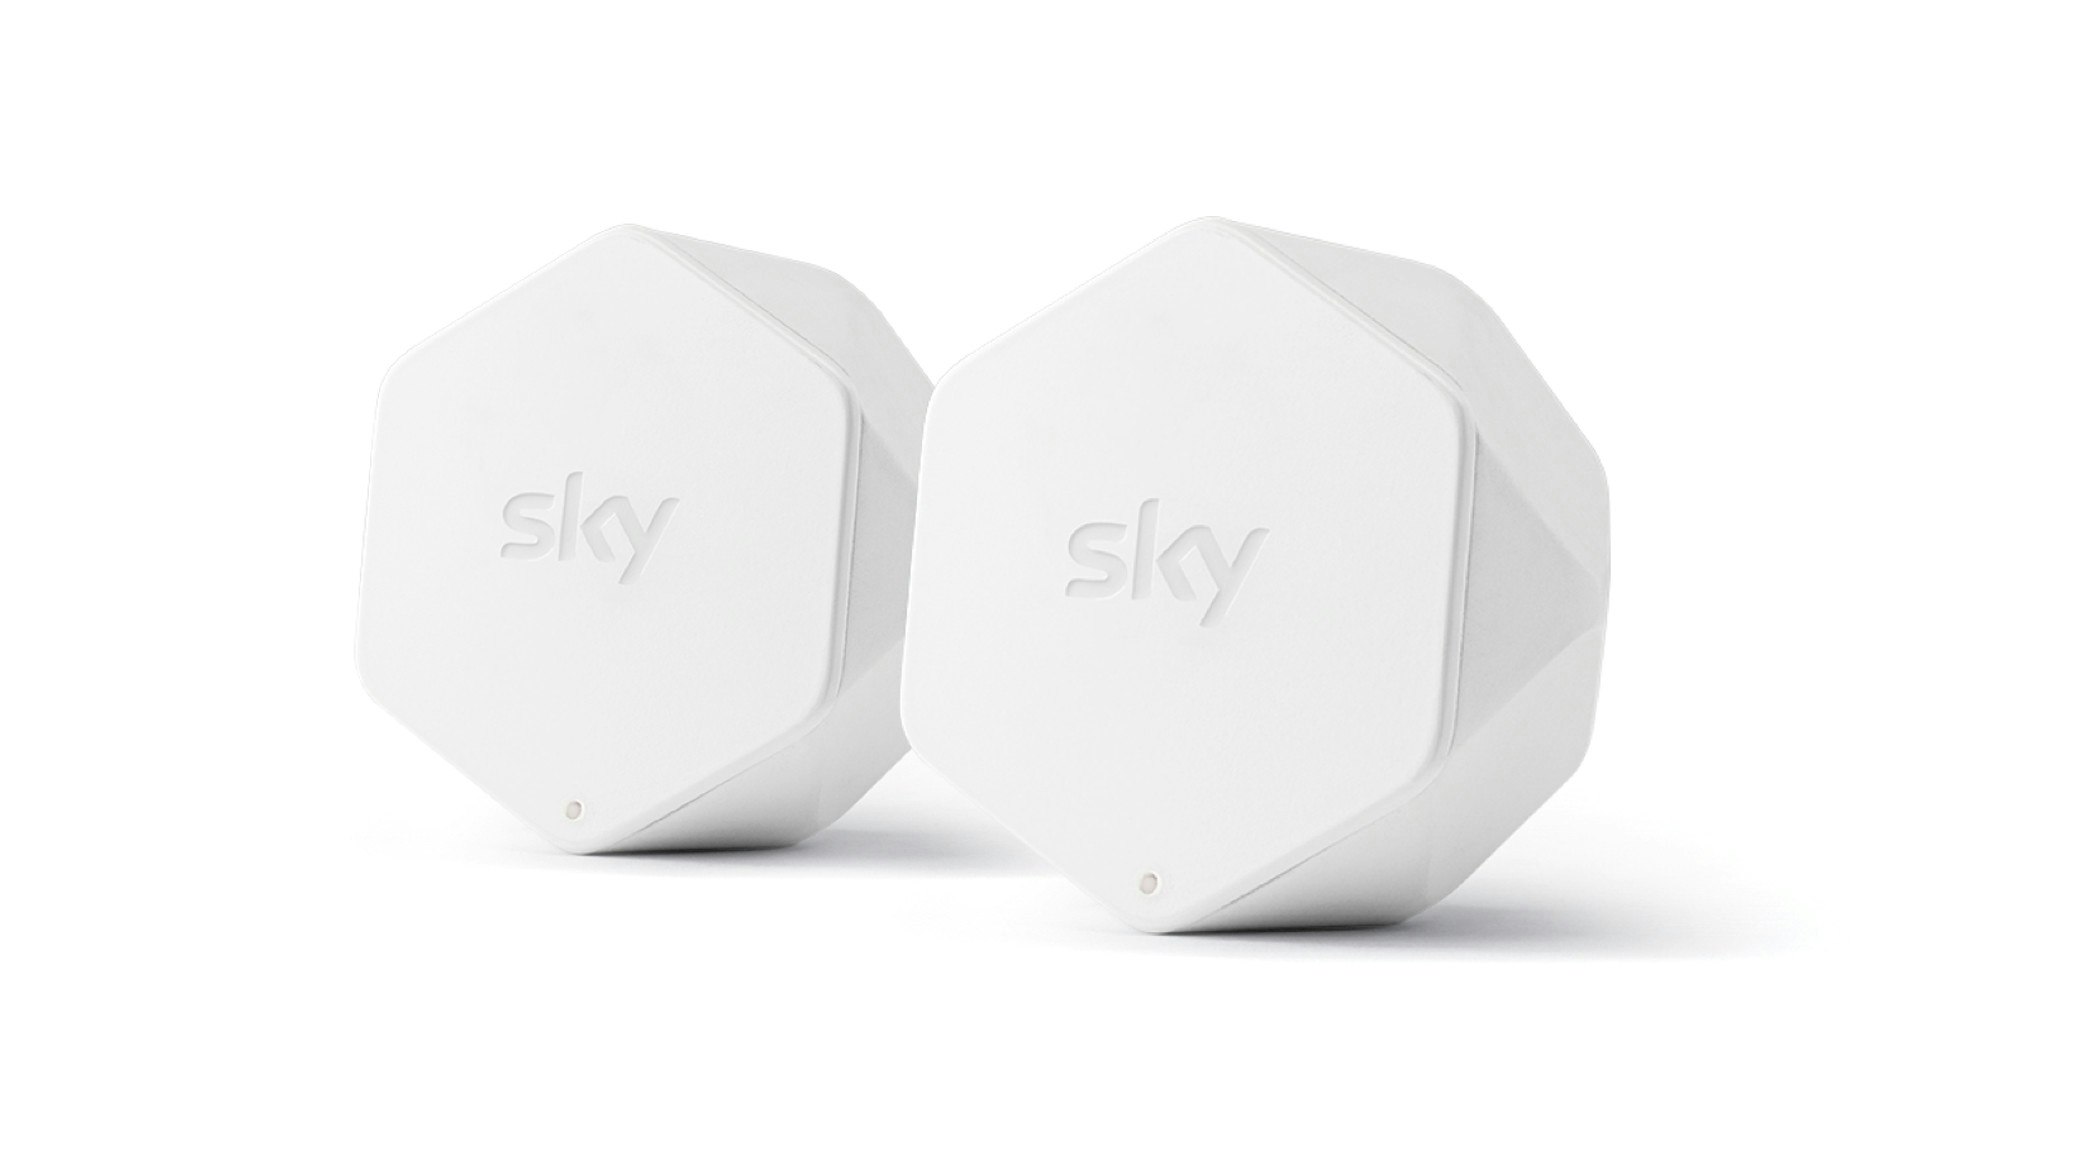 Sky Wifi Pod device